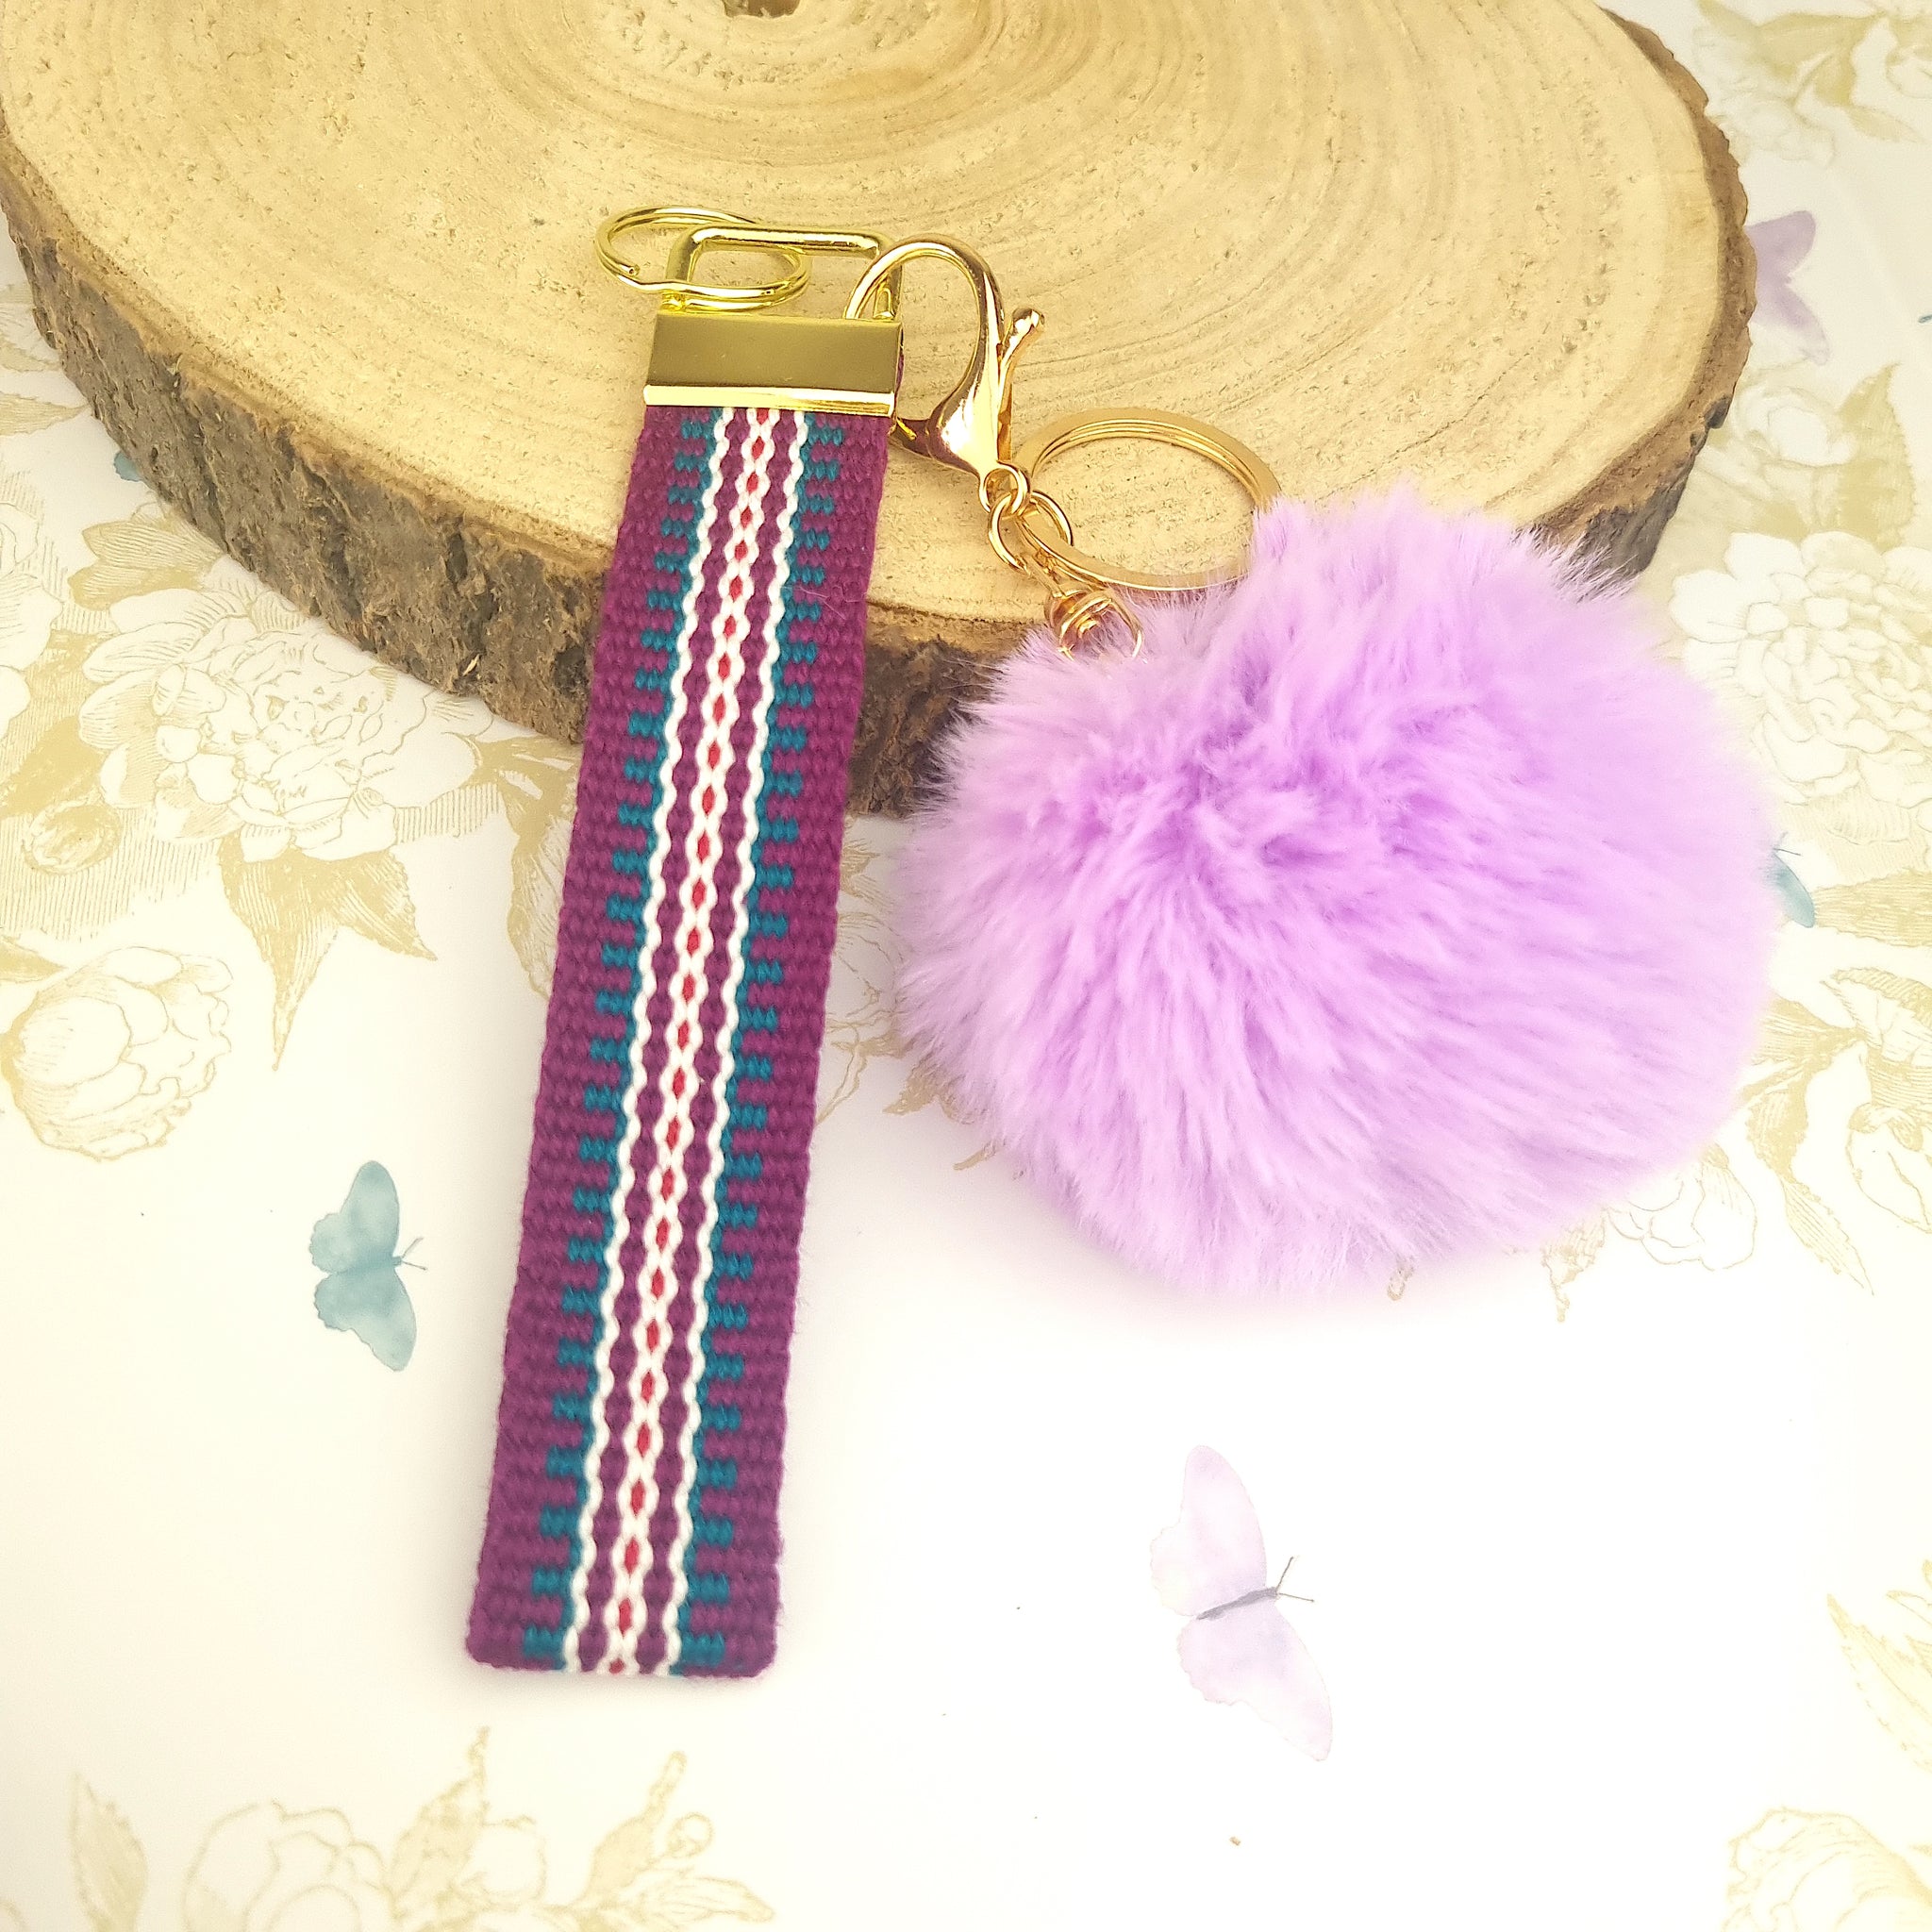 wristlet strap keychain in purple